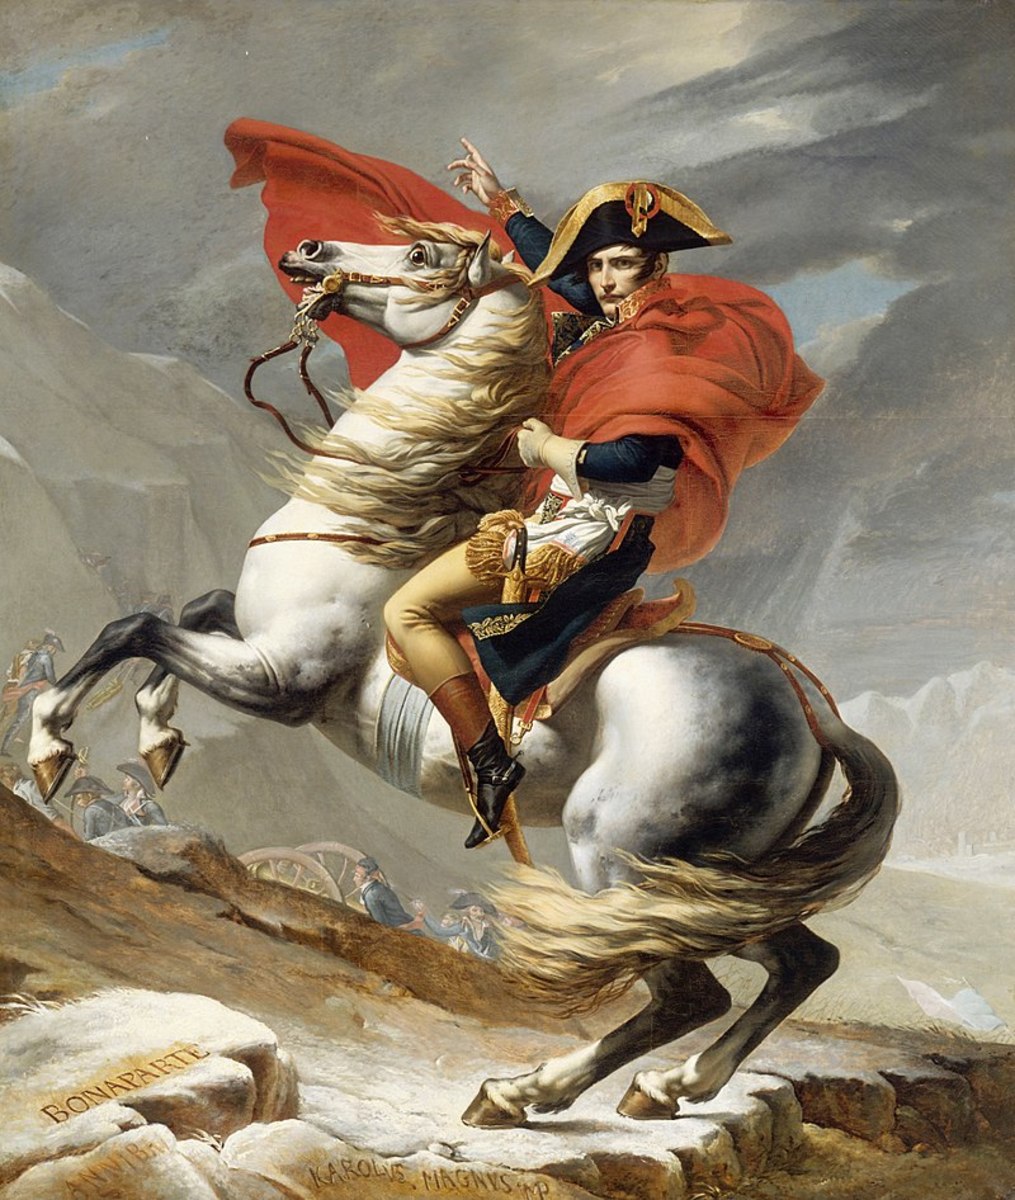 Napoleon Bonaparte: A Brief History